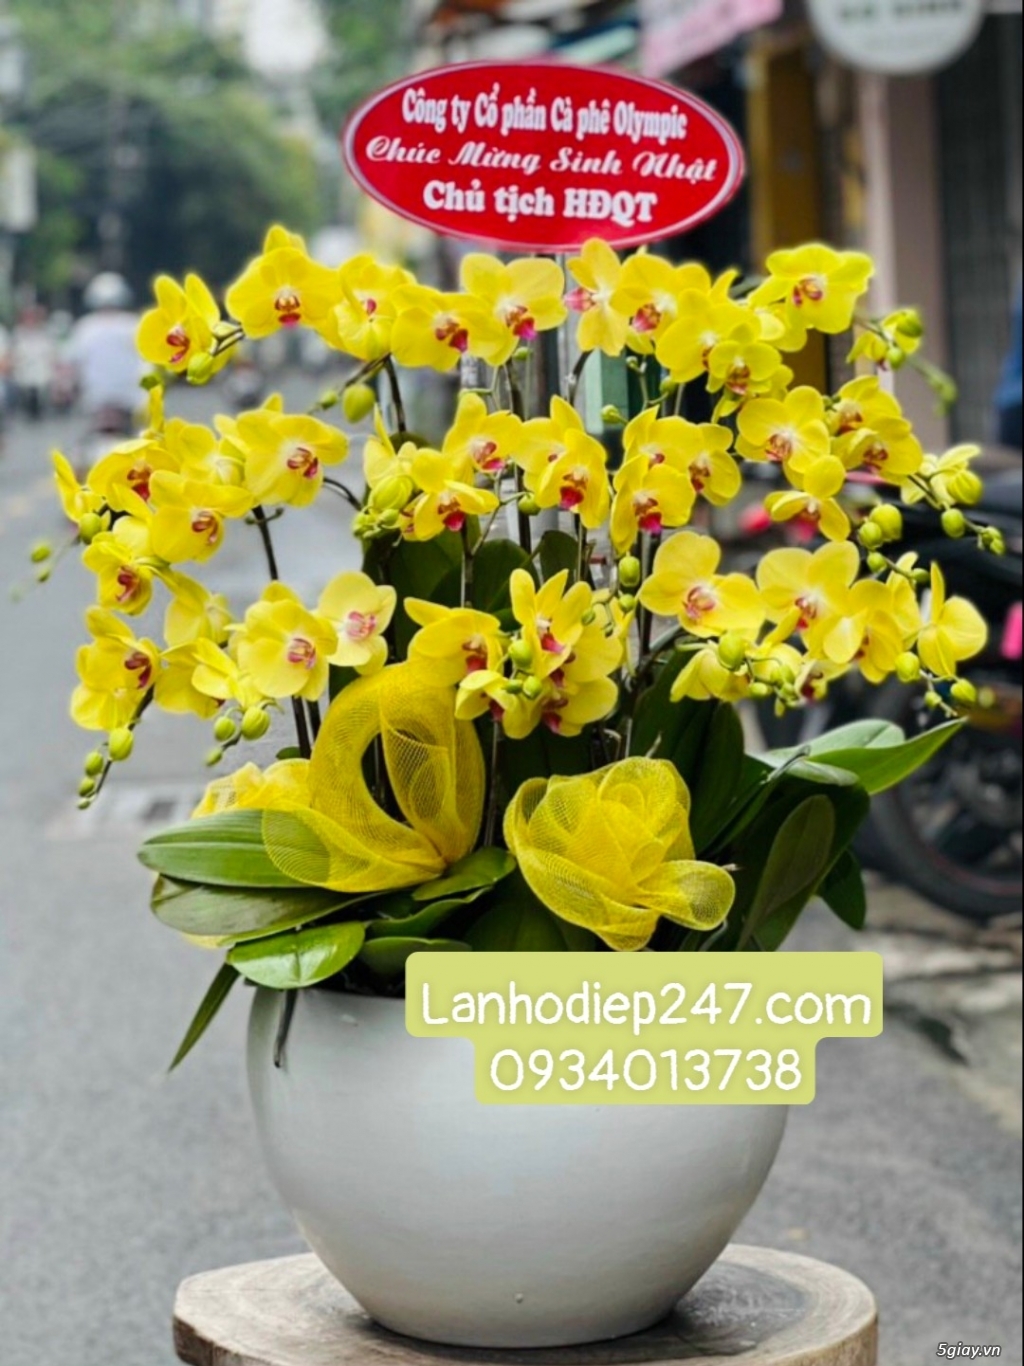 Shop hoa tươi lan hồ điệp 247 tại Đà Nẵng 0934013738 - 11